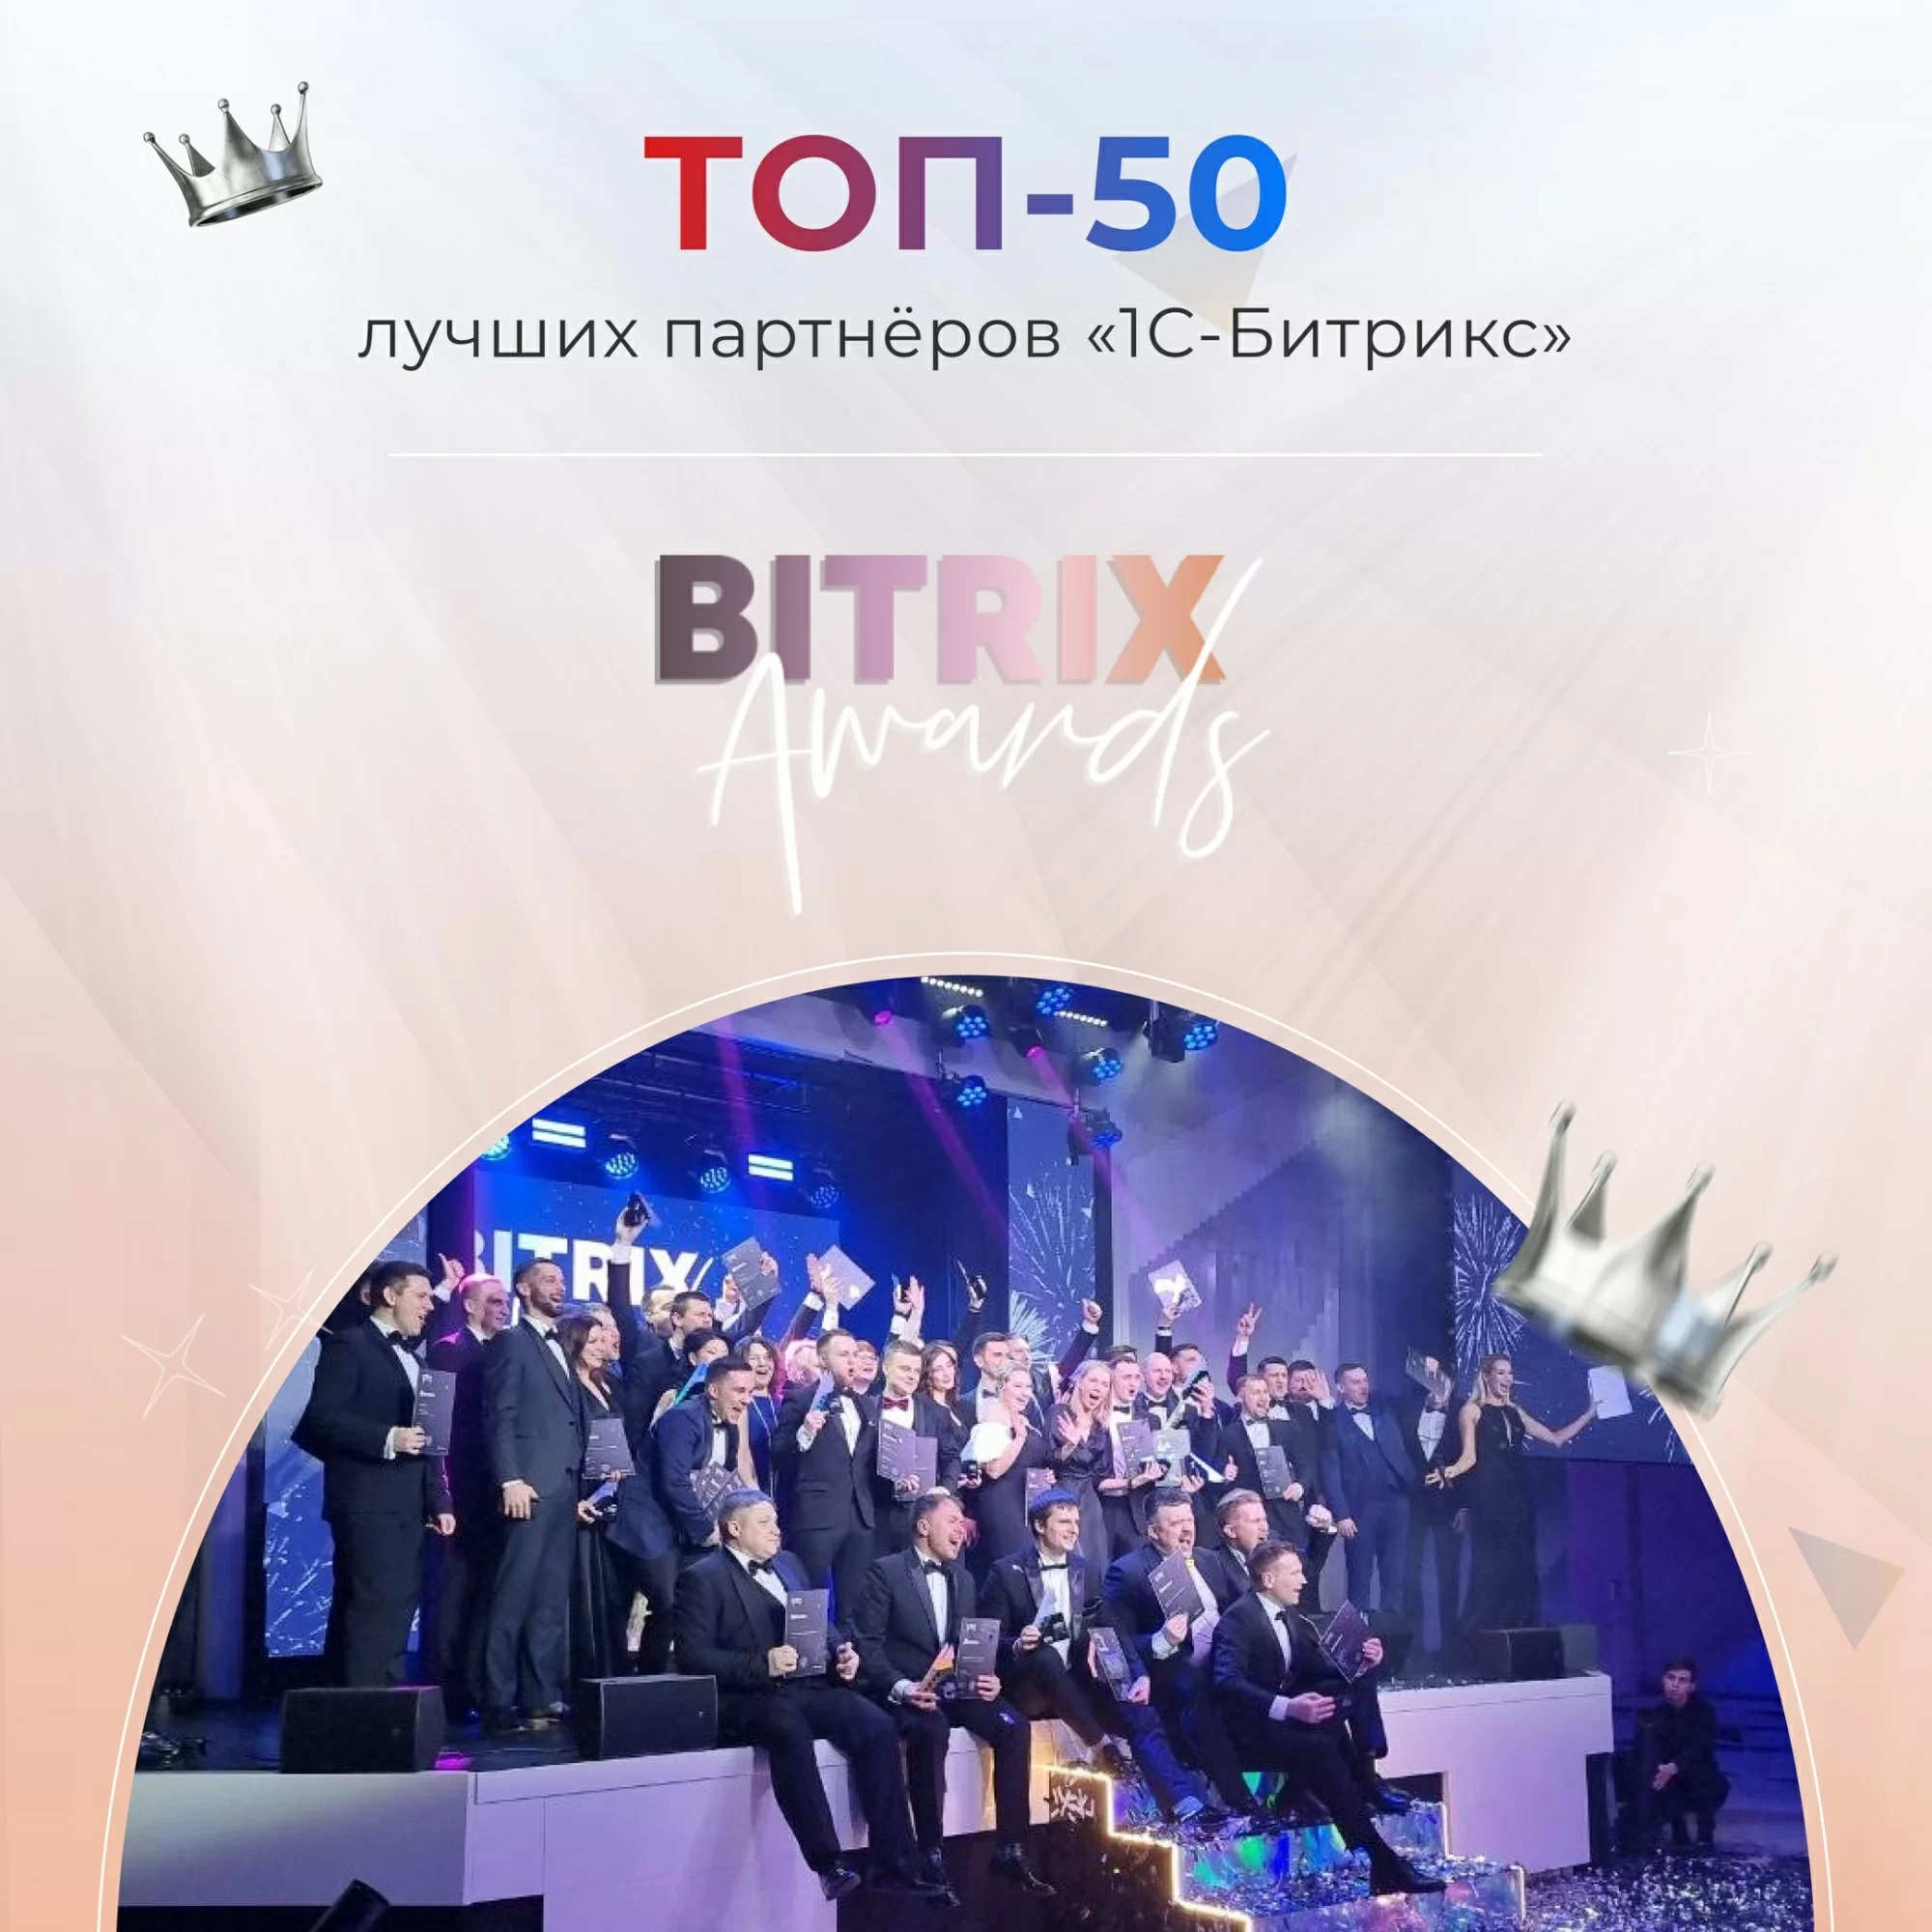 Рейтинг «Bitrix awards» ТОП-50 \ Россия